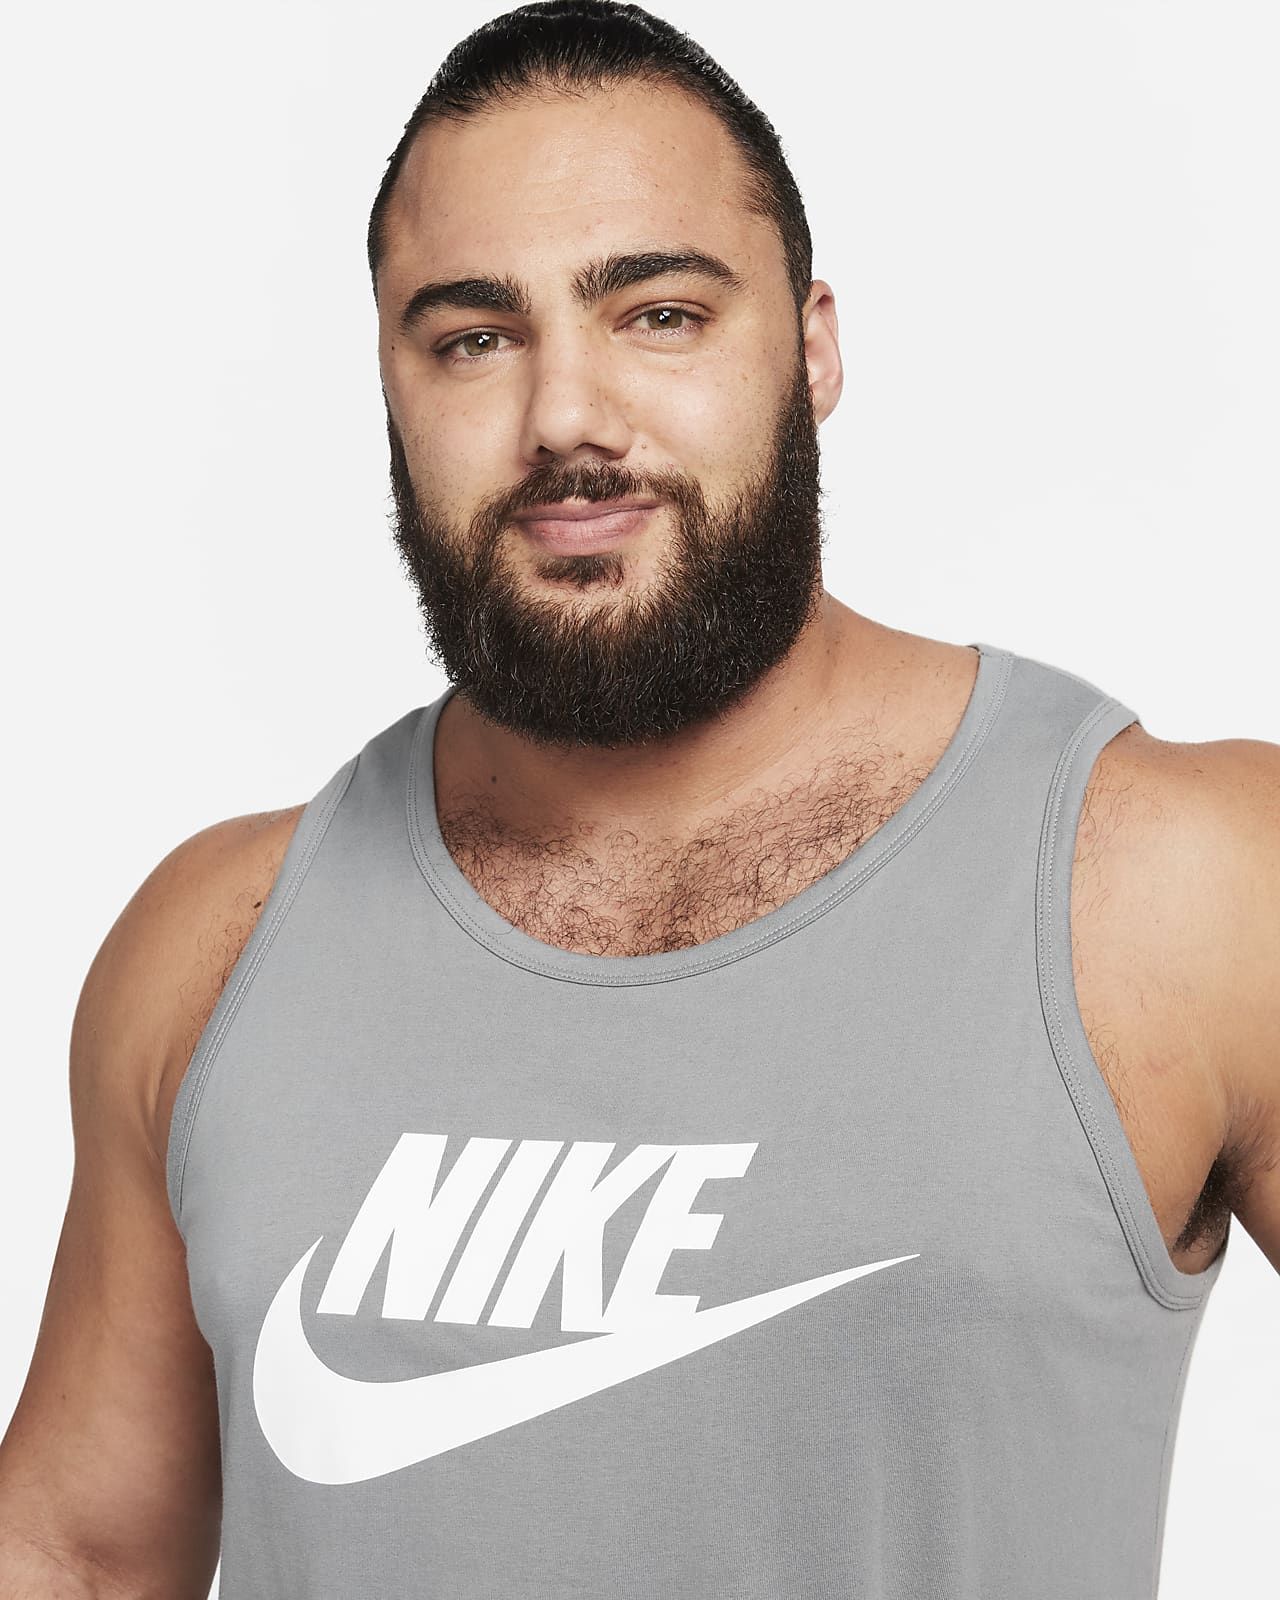 Nike Men's Tank Top - Black - XL